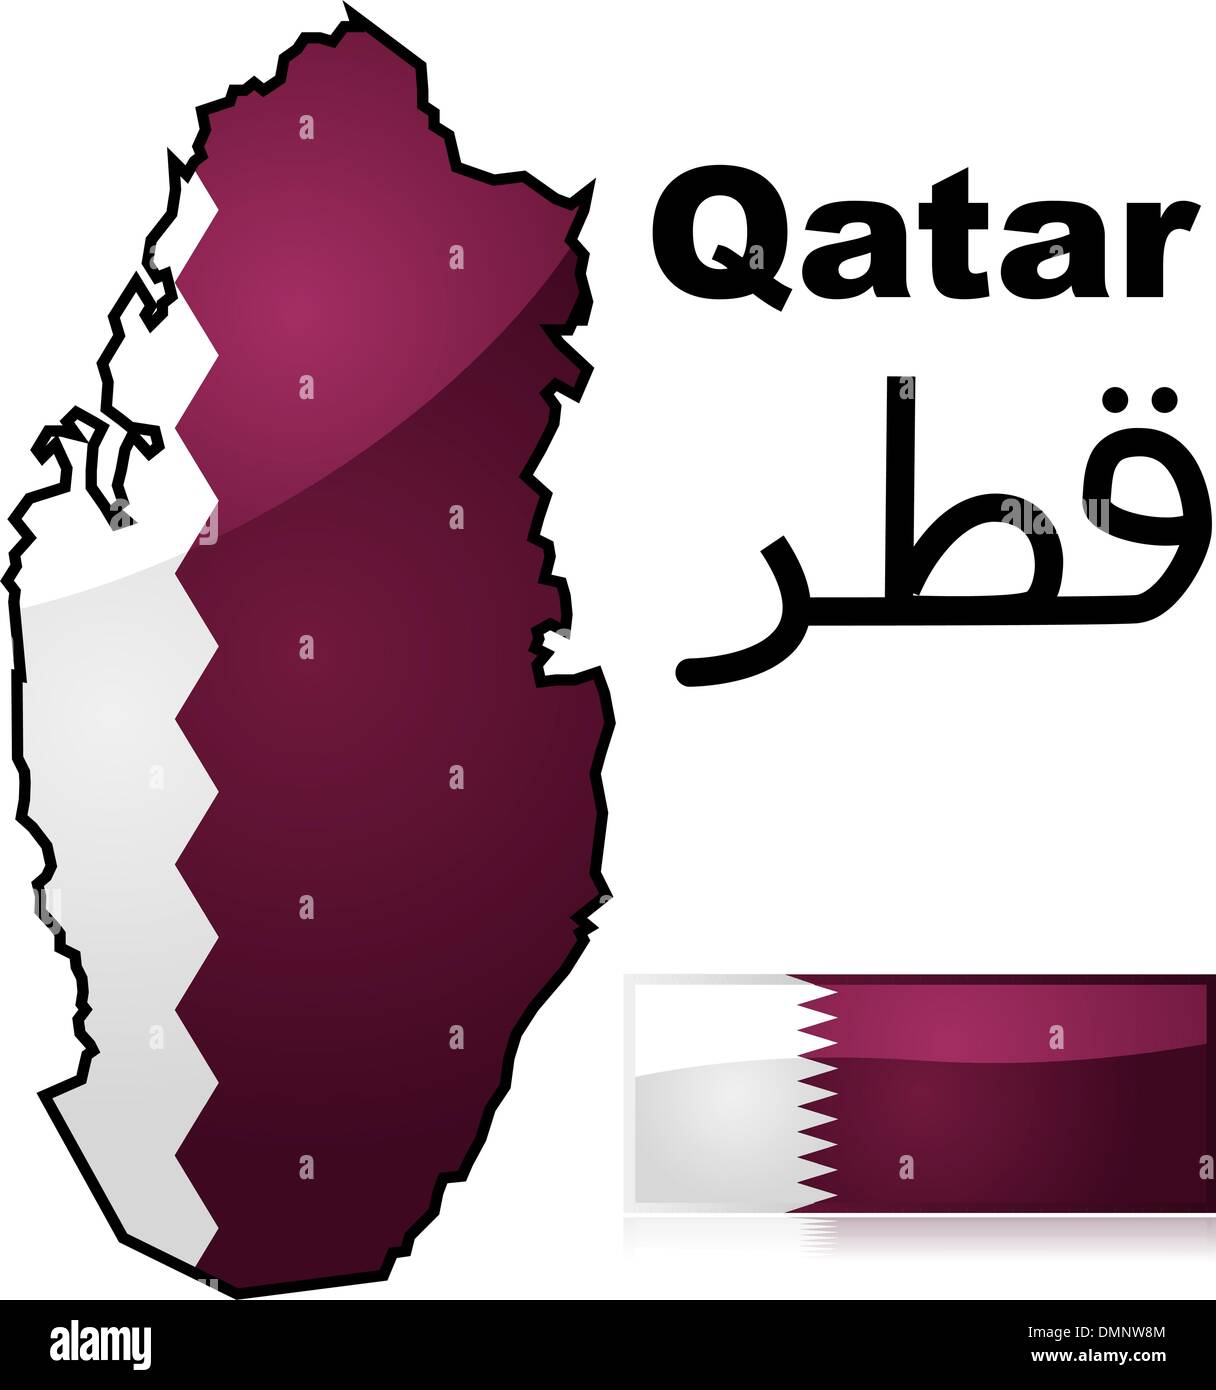 La carte et le drapeau du Qatar Illustration de Vecteur